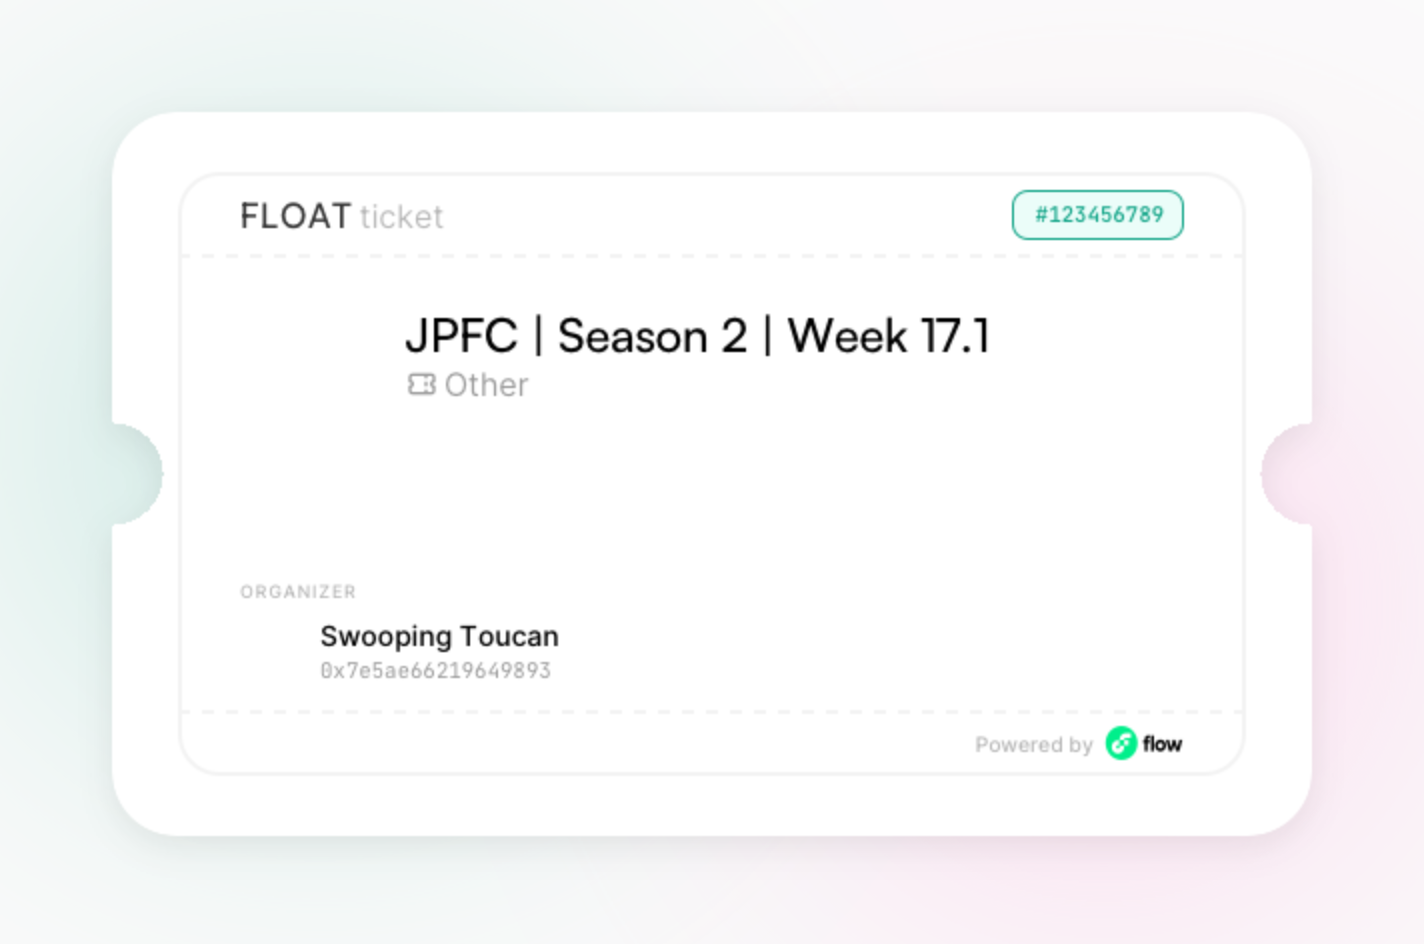 JPFC | Season 2 | Week 17.1 asset